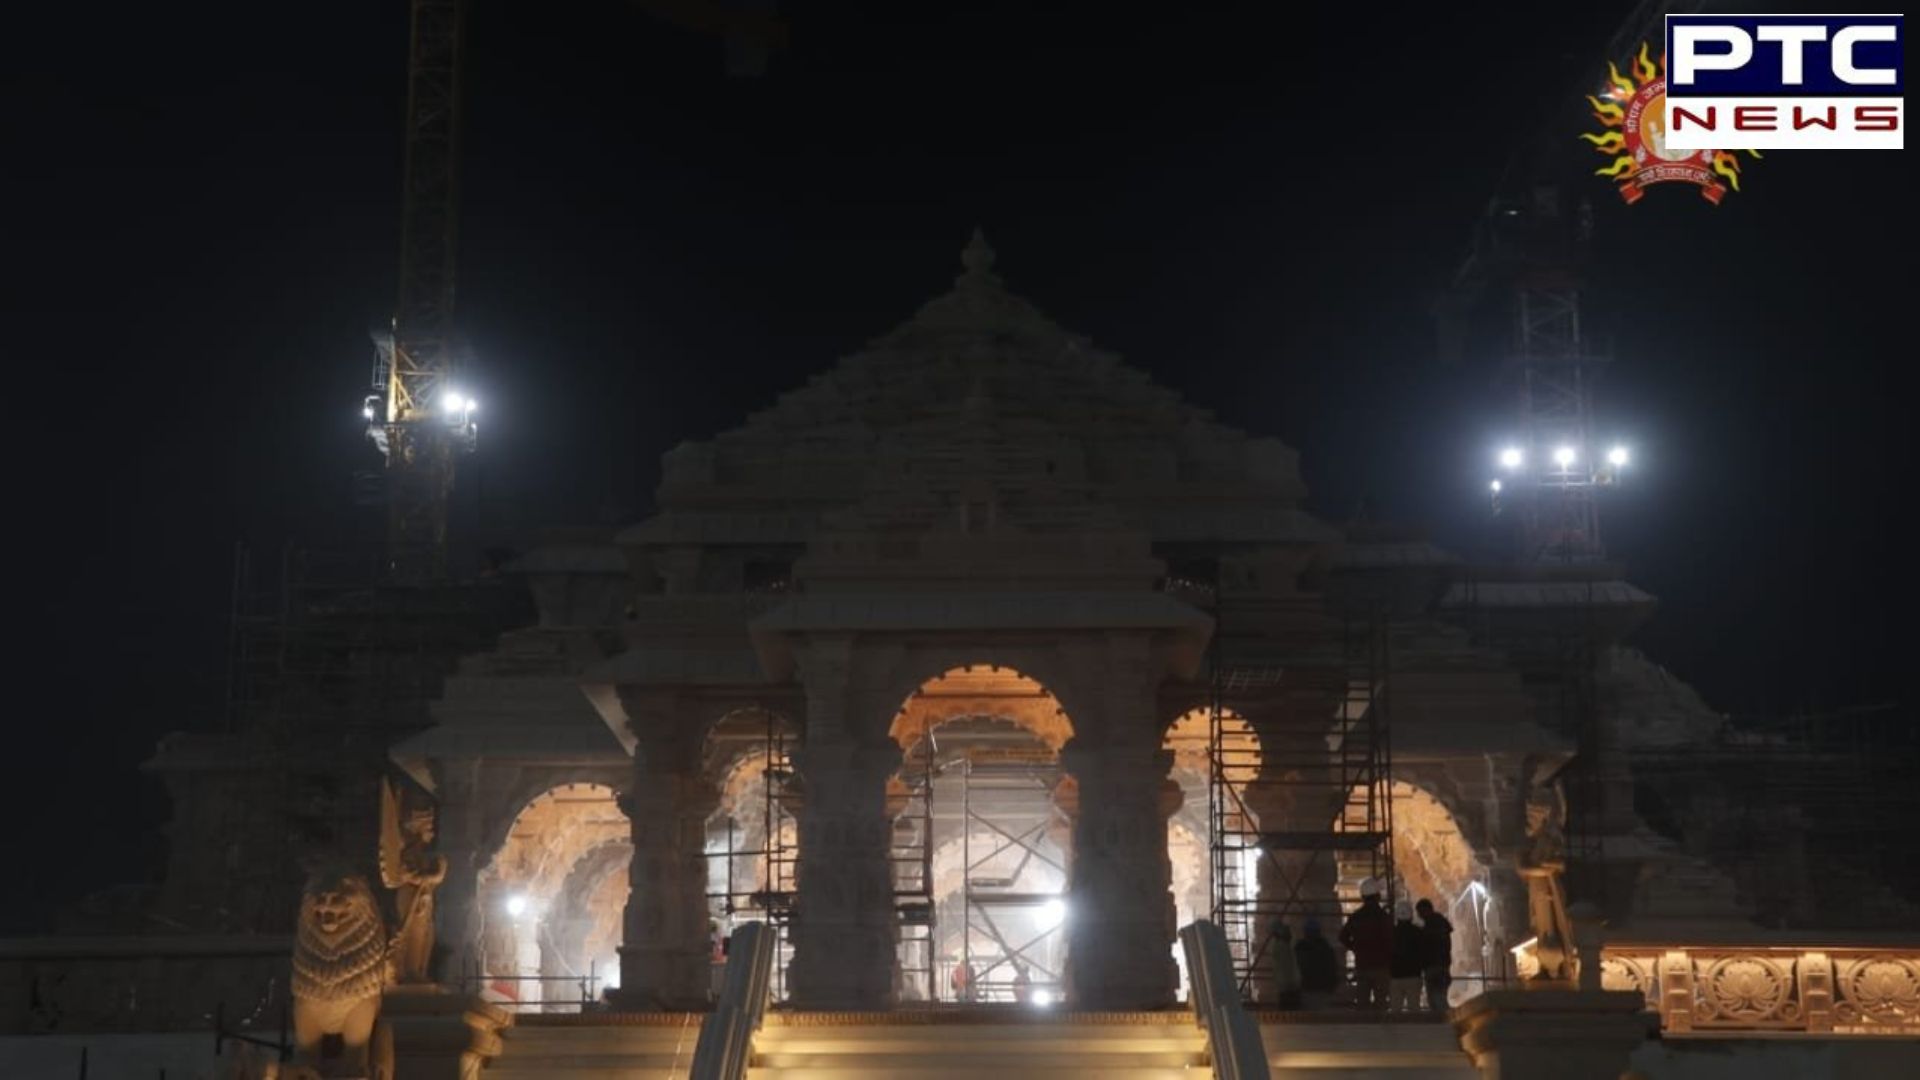 Ram Mandir Pic: ਰਾਤ ਸਮੇਂ ਇਸ ਤਰ੍ਹਾਂ ਜਗਮਗਾਉਂਦਾ ਹੈ ਰਾਮ ਮੰਦਰ, ਦੇਖੋ ਤਸਵੀਰਾਂ